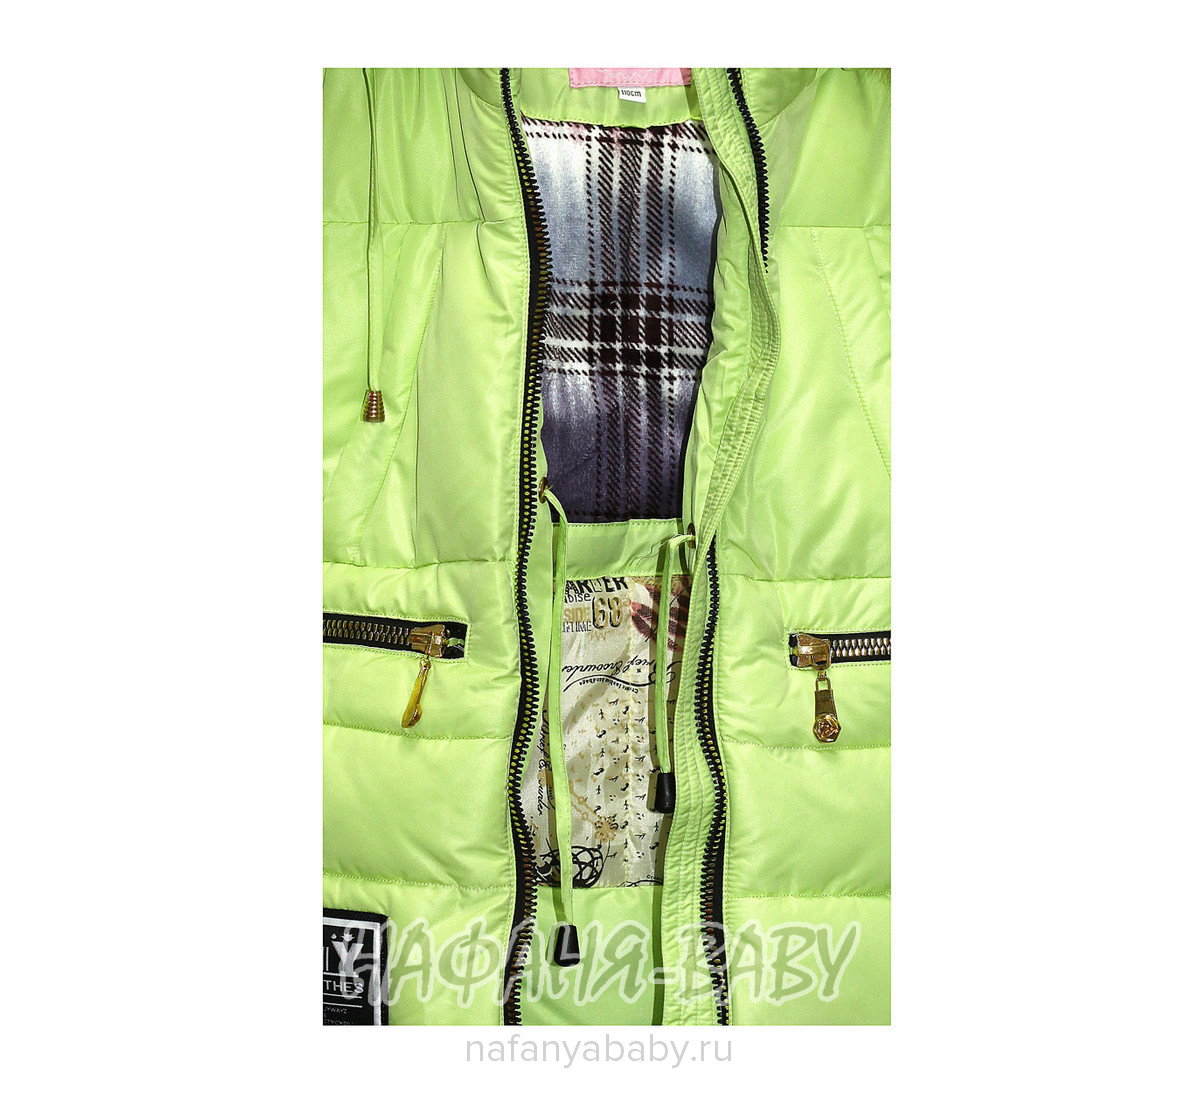 Детская зимняя куртка для девочки YFNY арт: 3178, 5-9 лет, 1-4 года, цвет светлый зеленый, оптом Китай (Пекин)